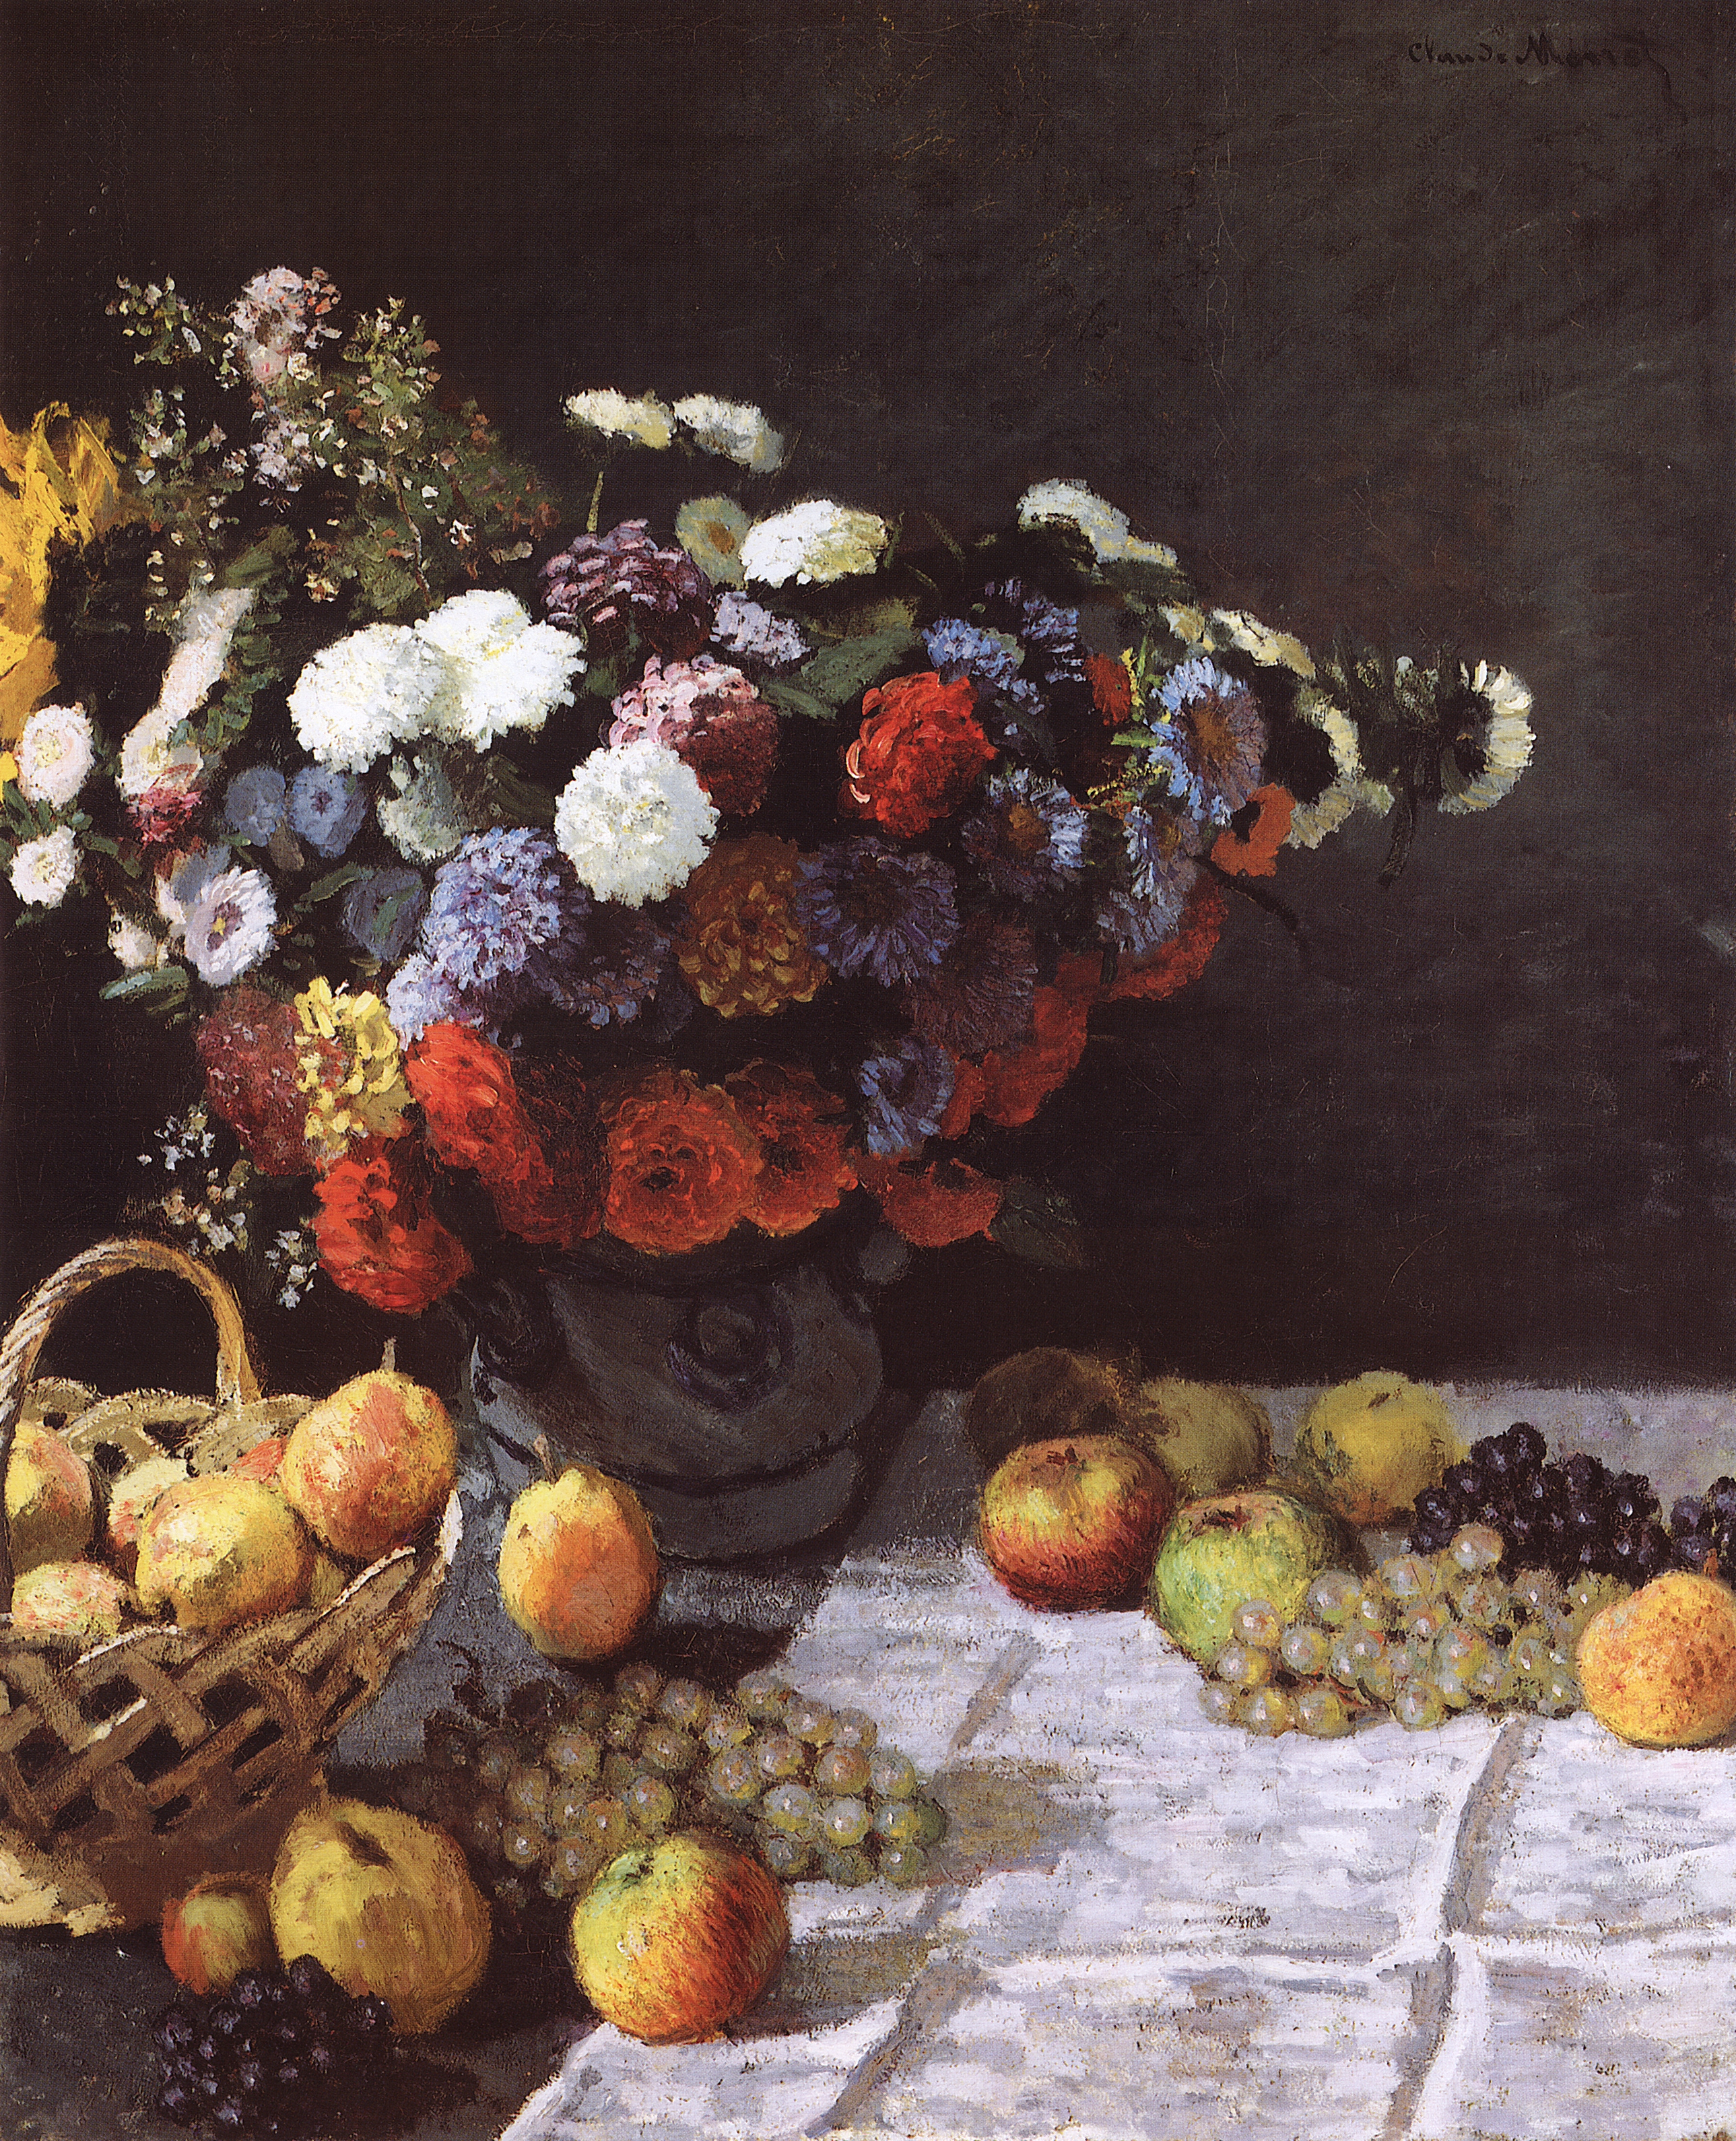 Моне Клод. Натюрморт с цветами и фруктами. 1869